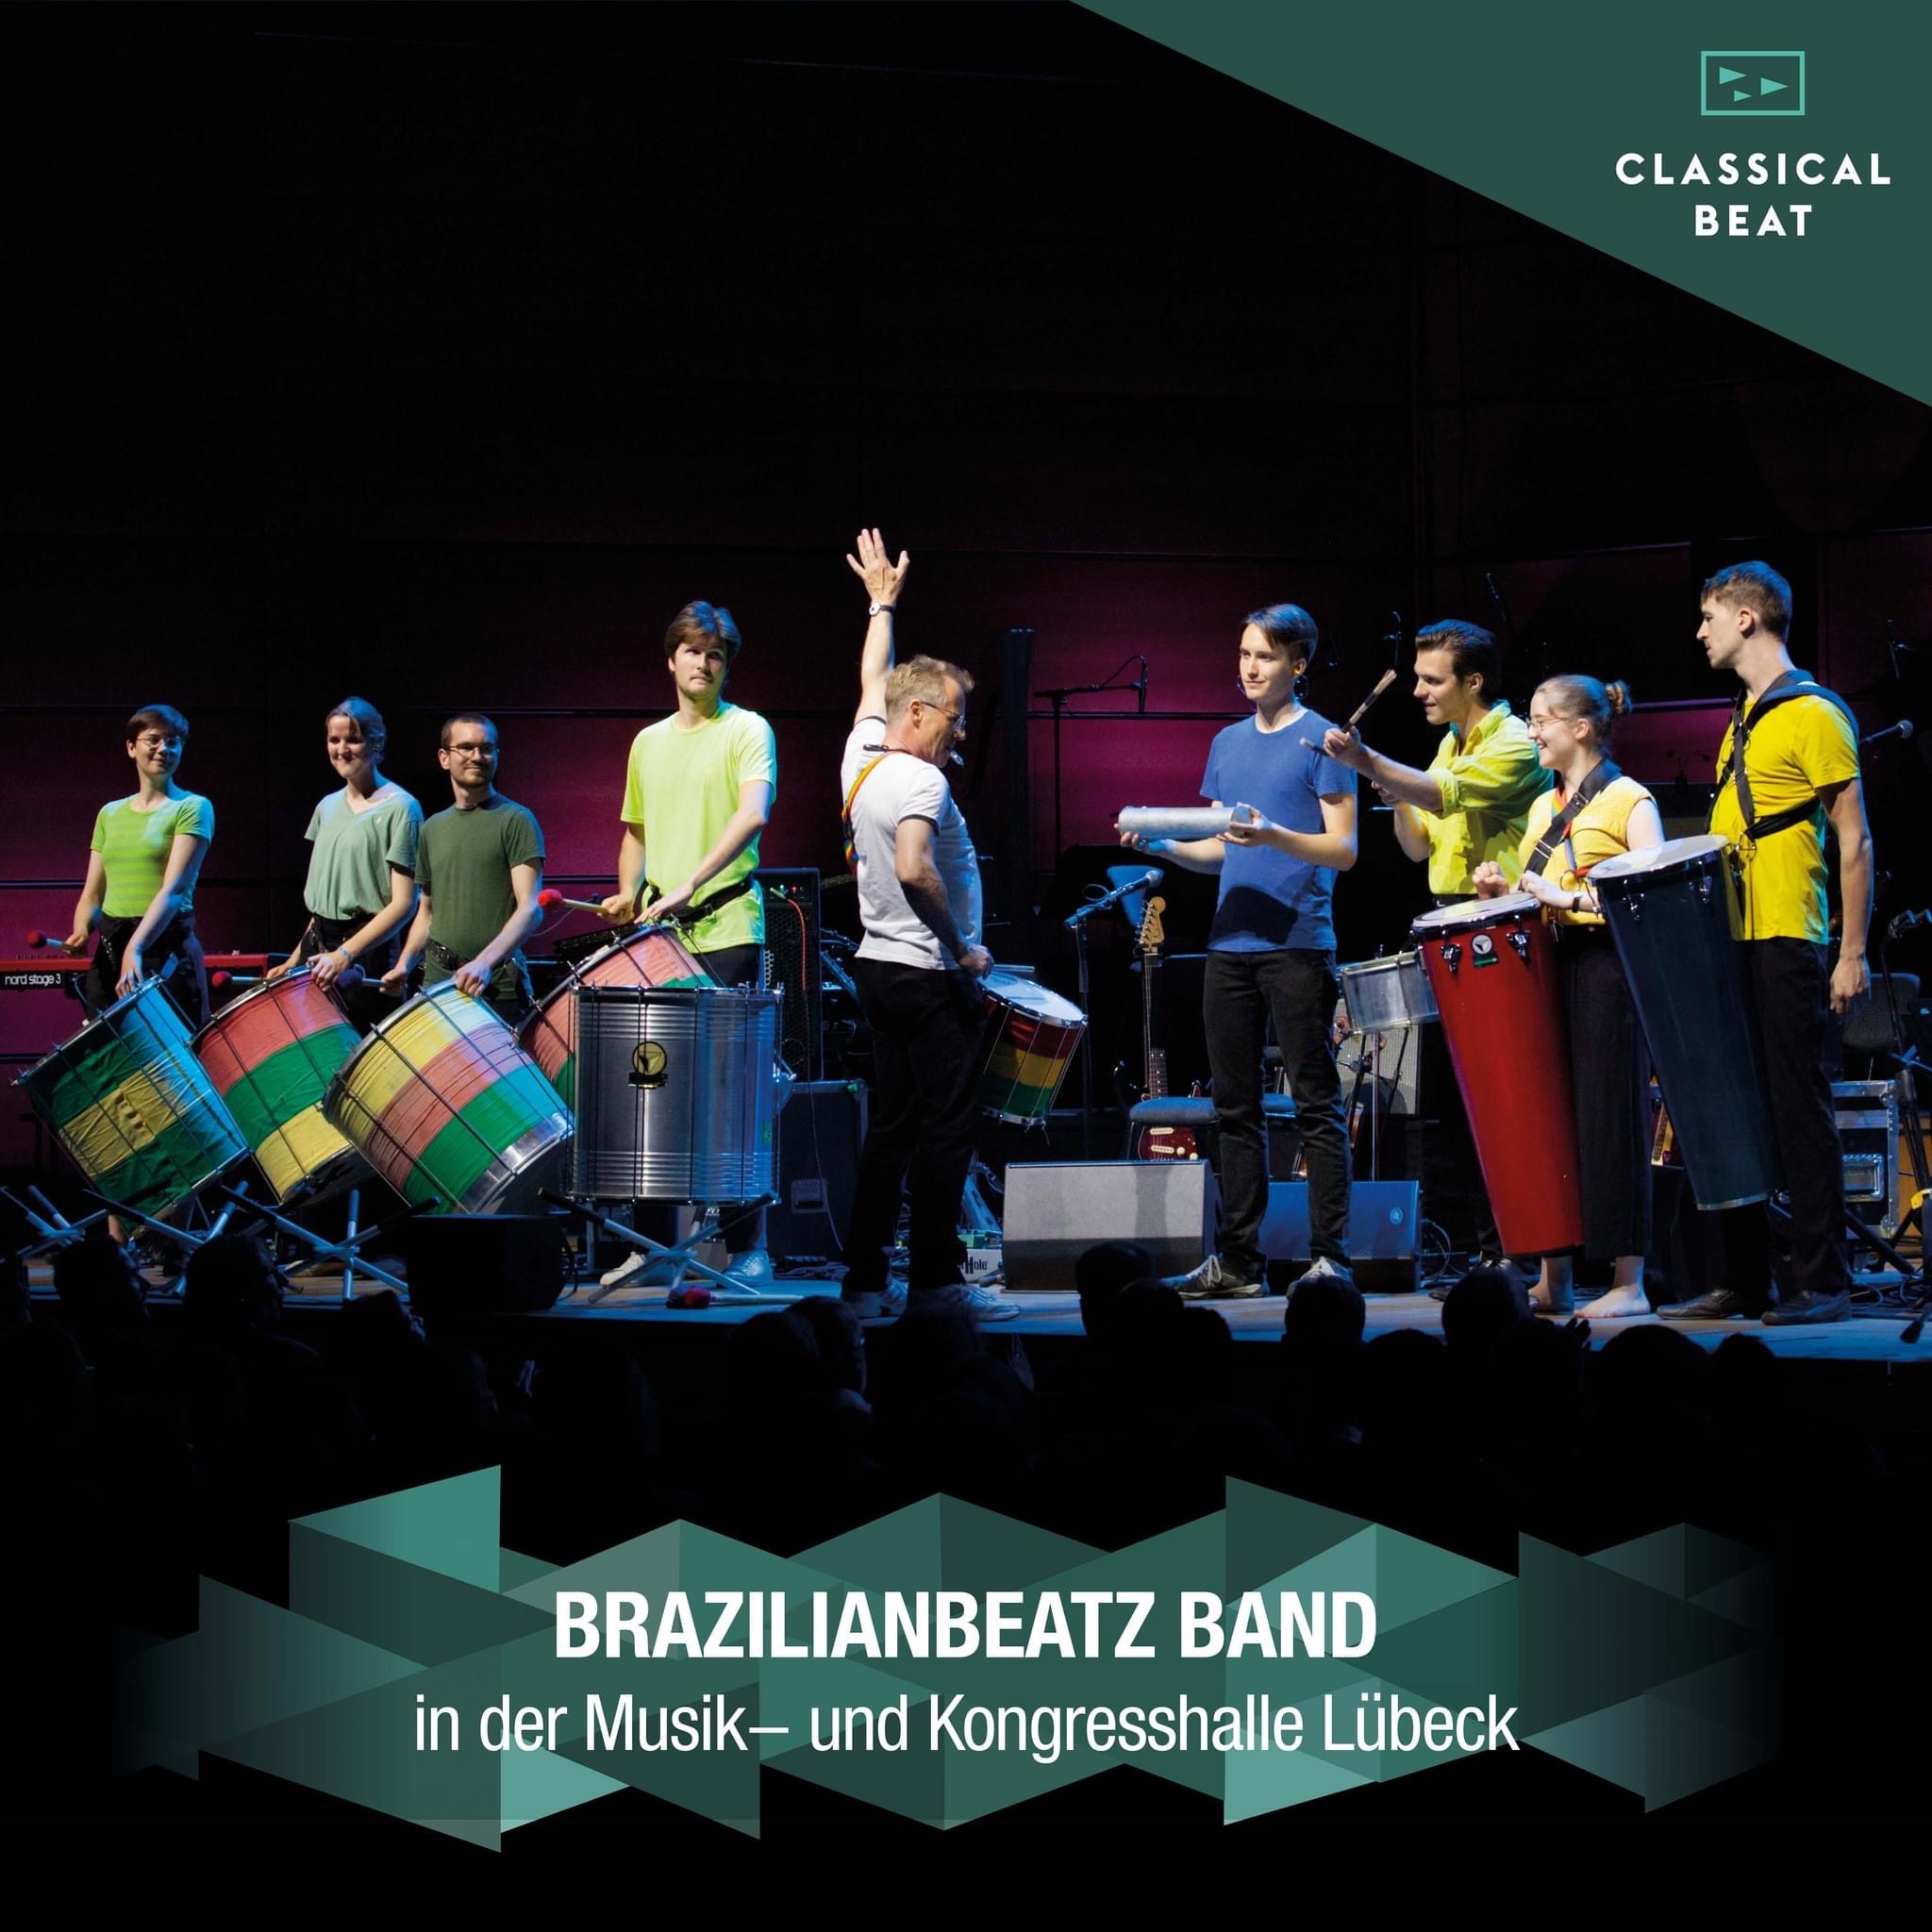 BrazilianBeatz mit "Funky-Samba" in der Musik- und Kongresshalle Lübeck am 21. Juli 2022 (© CLASSICAL BEAT)